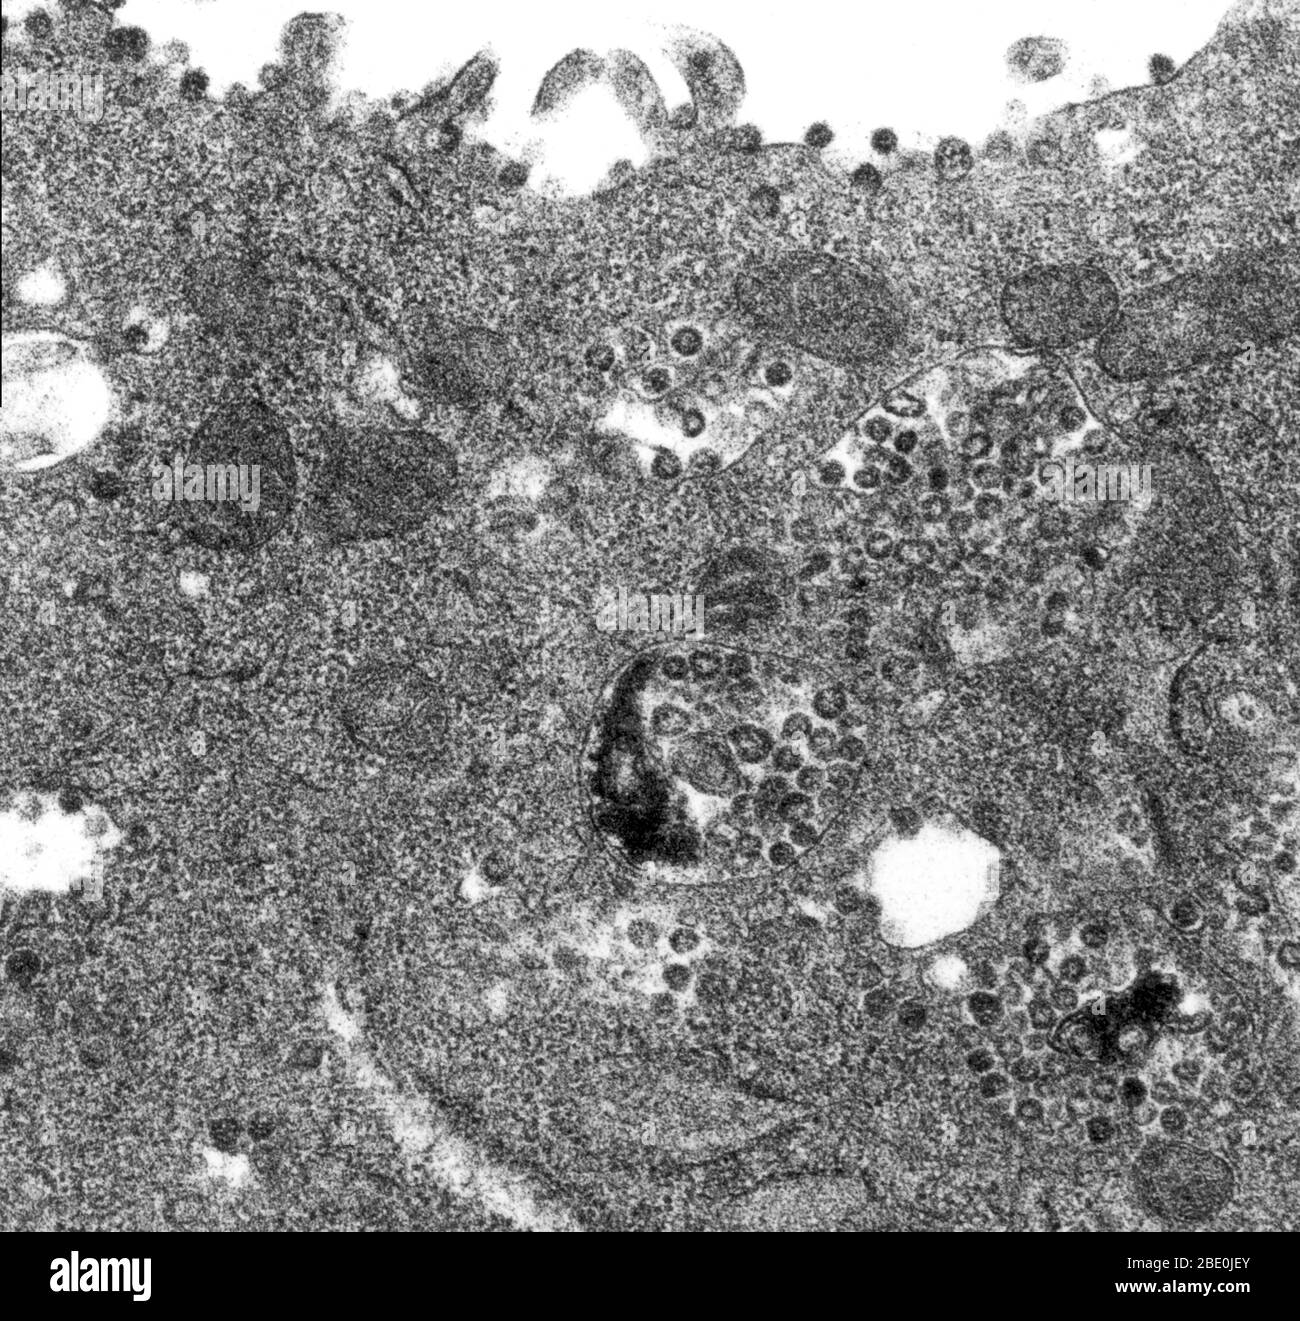 Transmission Electron Micrograph (TEM) eines dünnen TEM-Abschnitts einer infizierten Vero E6-Zelle, der das Vorhandensein von Coronavirus-Partikeln aufdeckt. Beachten Sie, dass die viralen Partikel innerhalb der zytoplasmatischen Membran-gebundenen Vakuolen der Zelle und Zisternen des rauen endoplasmatischen Retikulums enthalten sind. Vero-Zellen sind eine Linie von Zellen, die in Zellkulturen verwendet werden. Coronaviren sind Arten von Viren, die zur Unterfamilie Coronavirinae in der Familie Coronaviridae, in der Reihenfolge Nidovirales gehören. Coronaviren sind eingehüllte Viren mit einem positiv-Sinn-Single-strängten RNA-Genom und mit einem Nukleokapsid von Helical symm Stockfoto